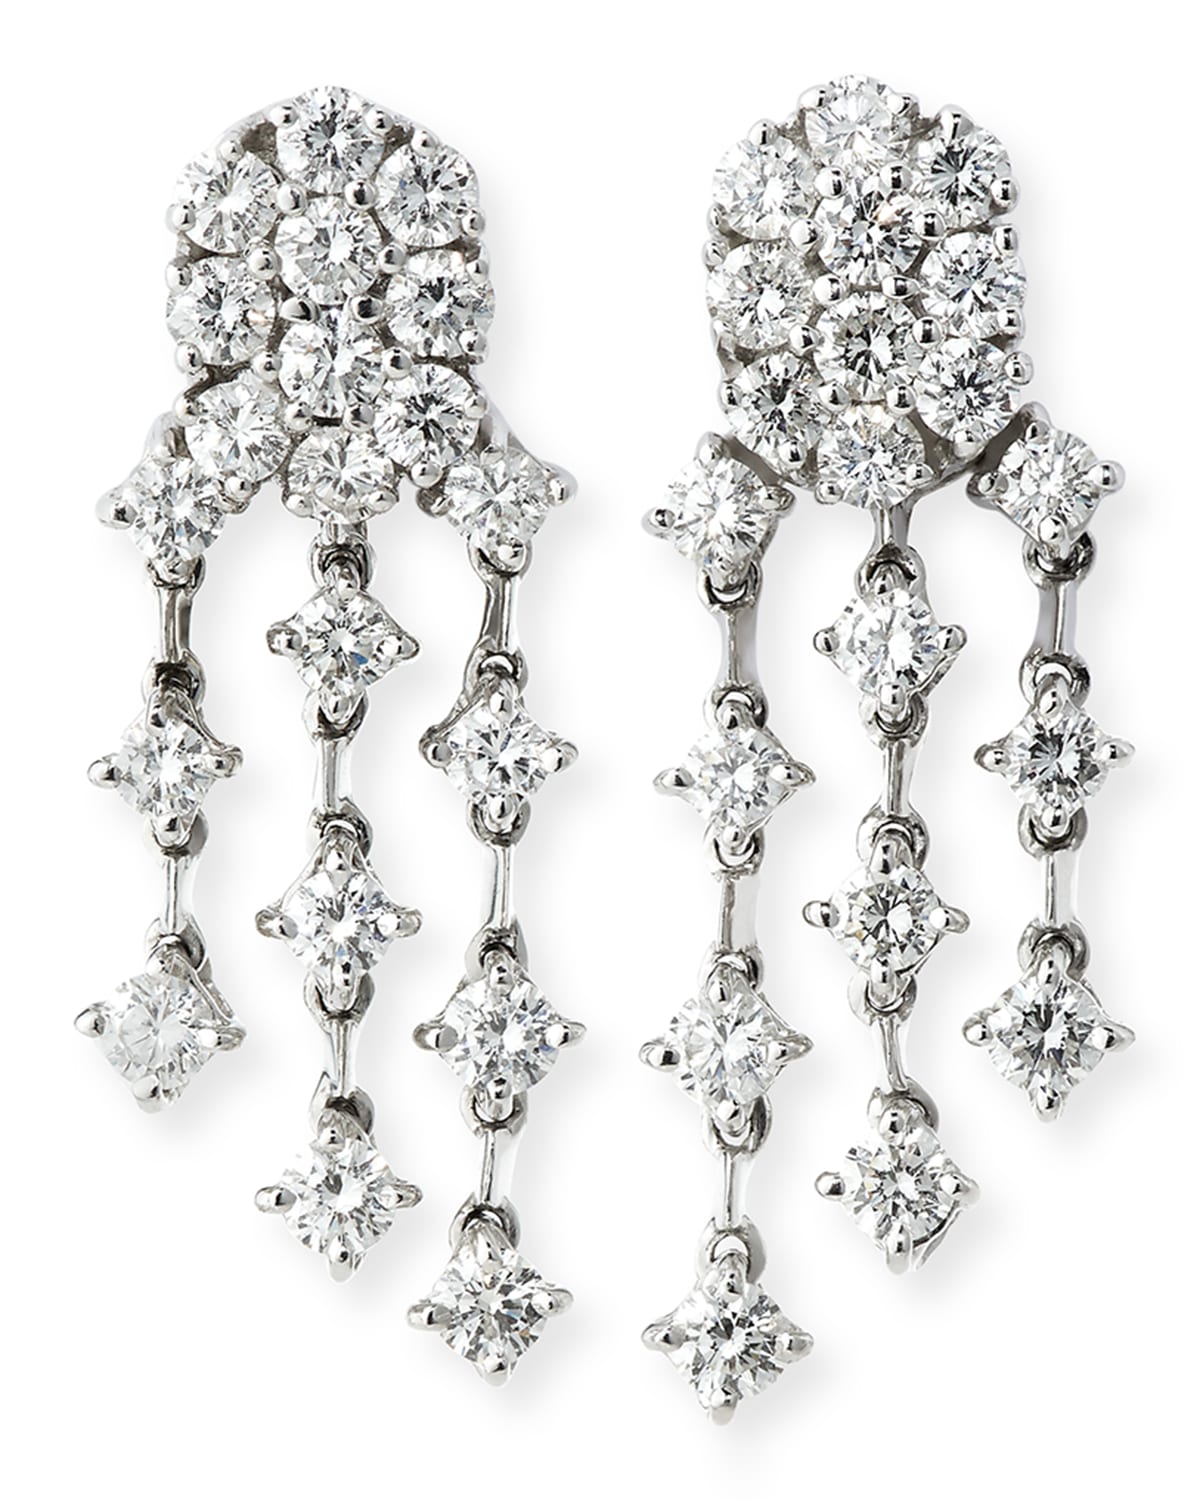 Andreoli Three-Strand Diamond Chandelier Earrings in 18K White Gold